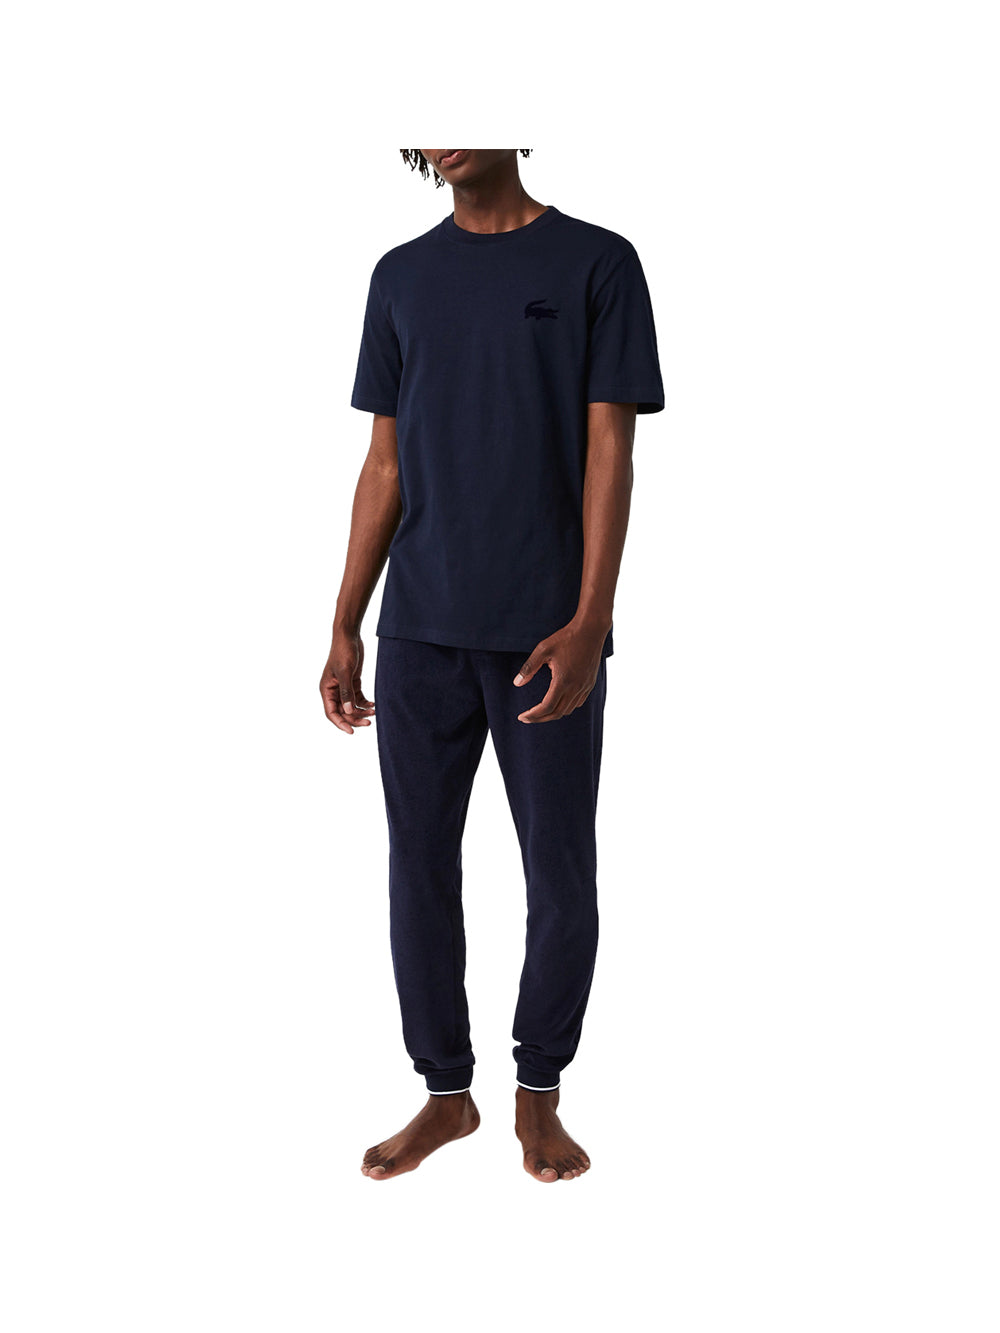 LACOSTE UNDERWEAR T-shirt Uomo Blu Navy a maniche corte con logo NAVY